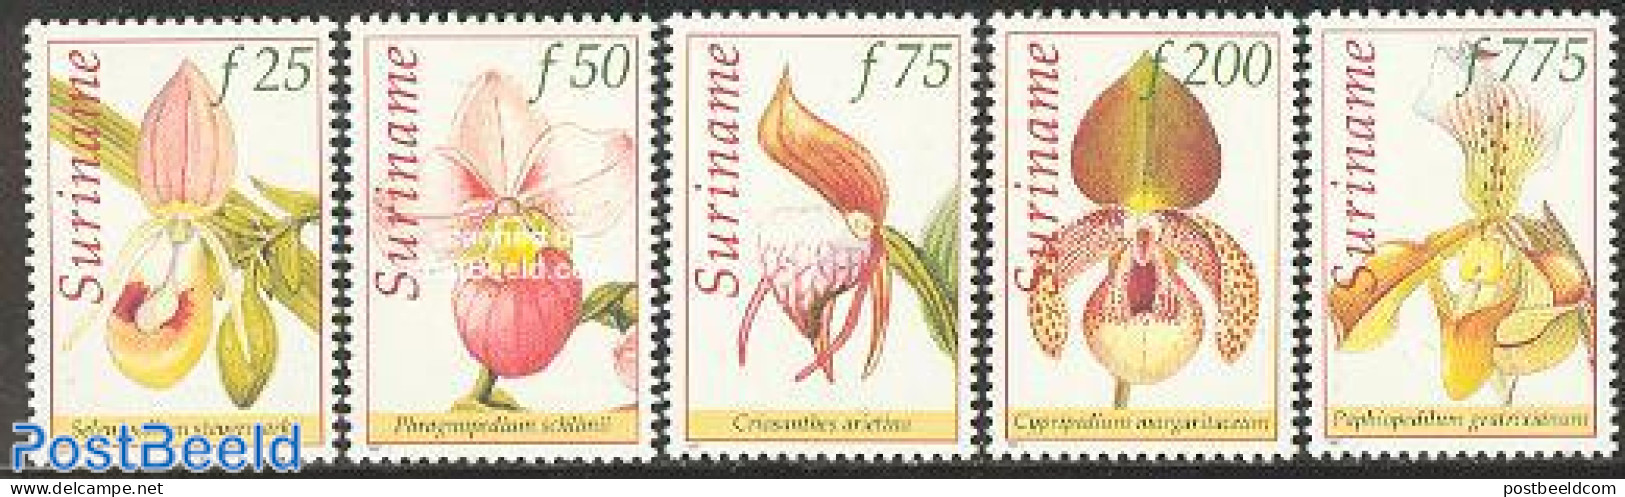 Suriname, Republic 1997 Orchids 5v, Mint NH, Nature - Flowers & Plants - Orchids - Surinam